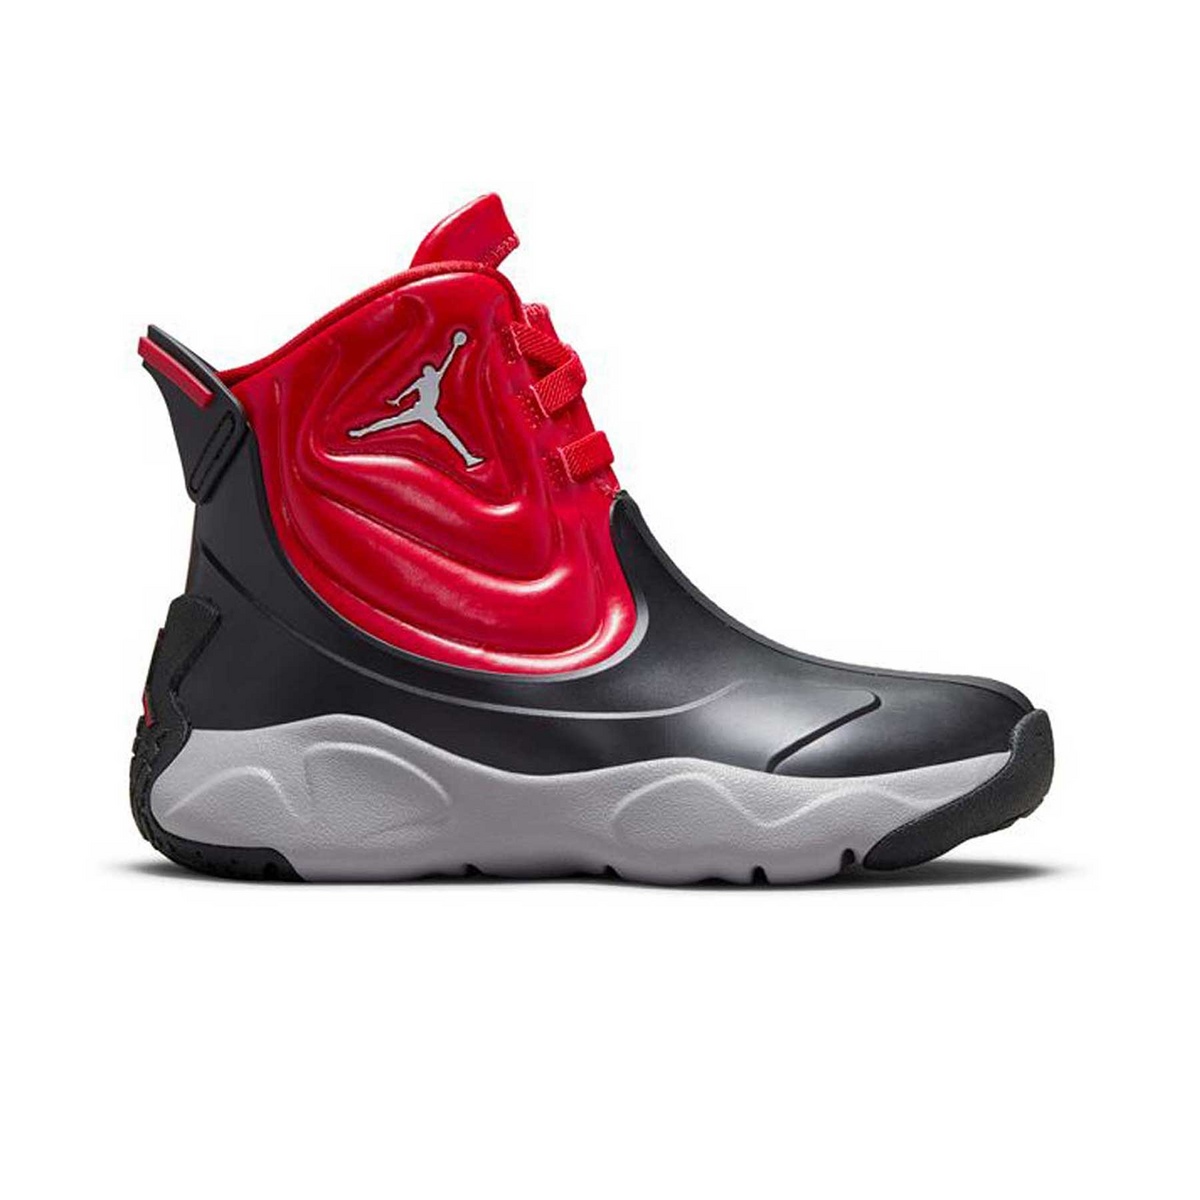 Nike Jordan Jordan drip 23 bambino